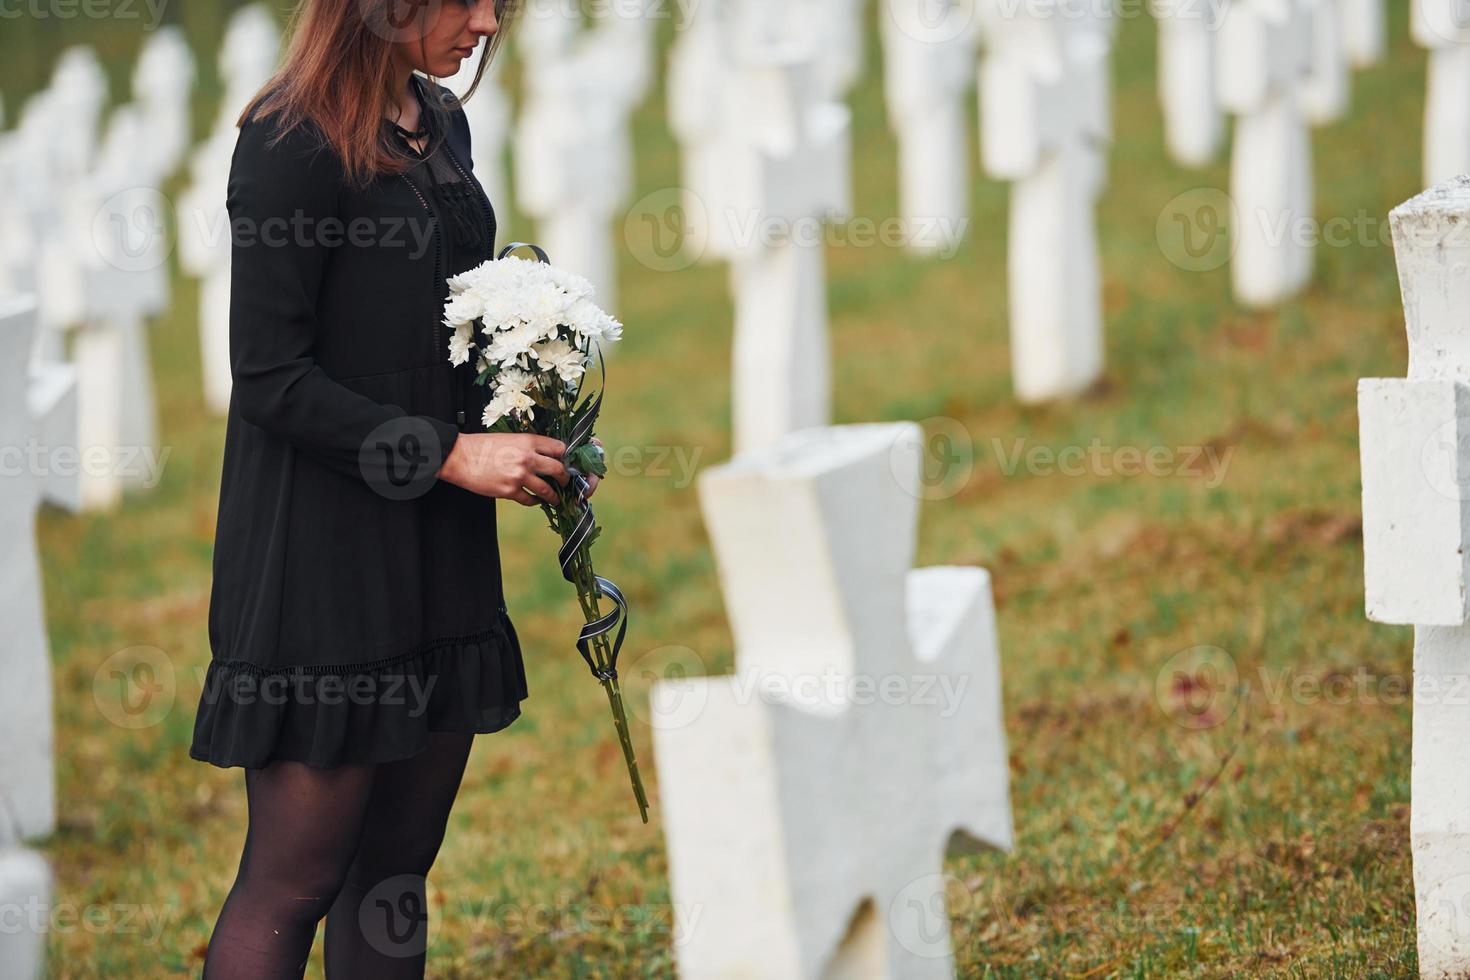 vue particulaire. jeune femme en vêtements noirs visitant le cimetière avec de nombreuses croix blanches. conception des funérailles et de la mort photo